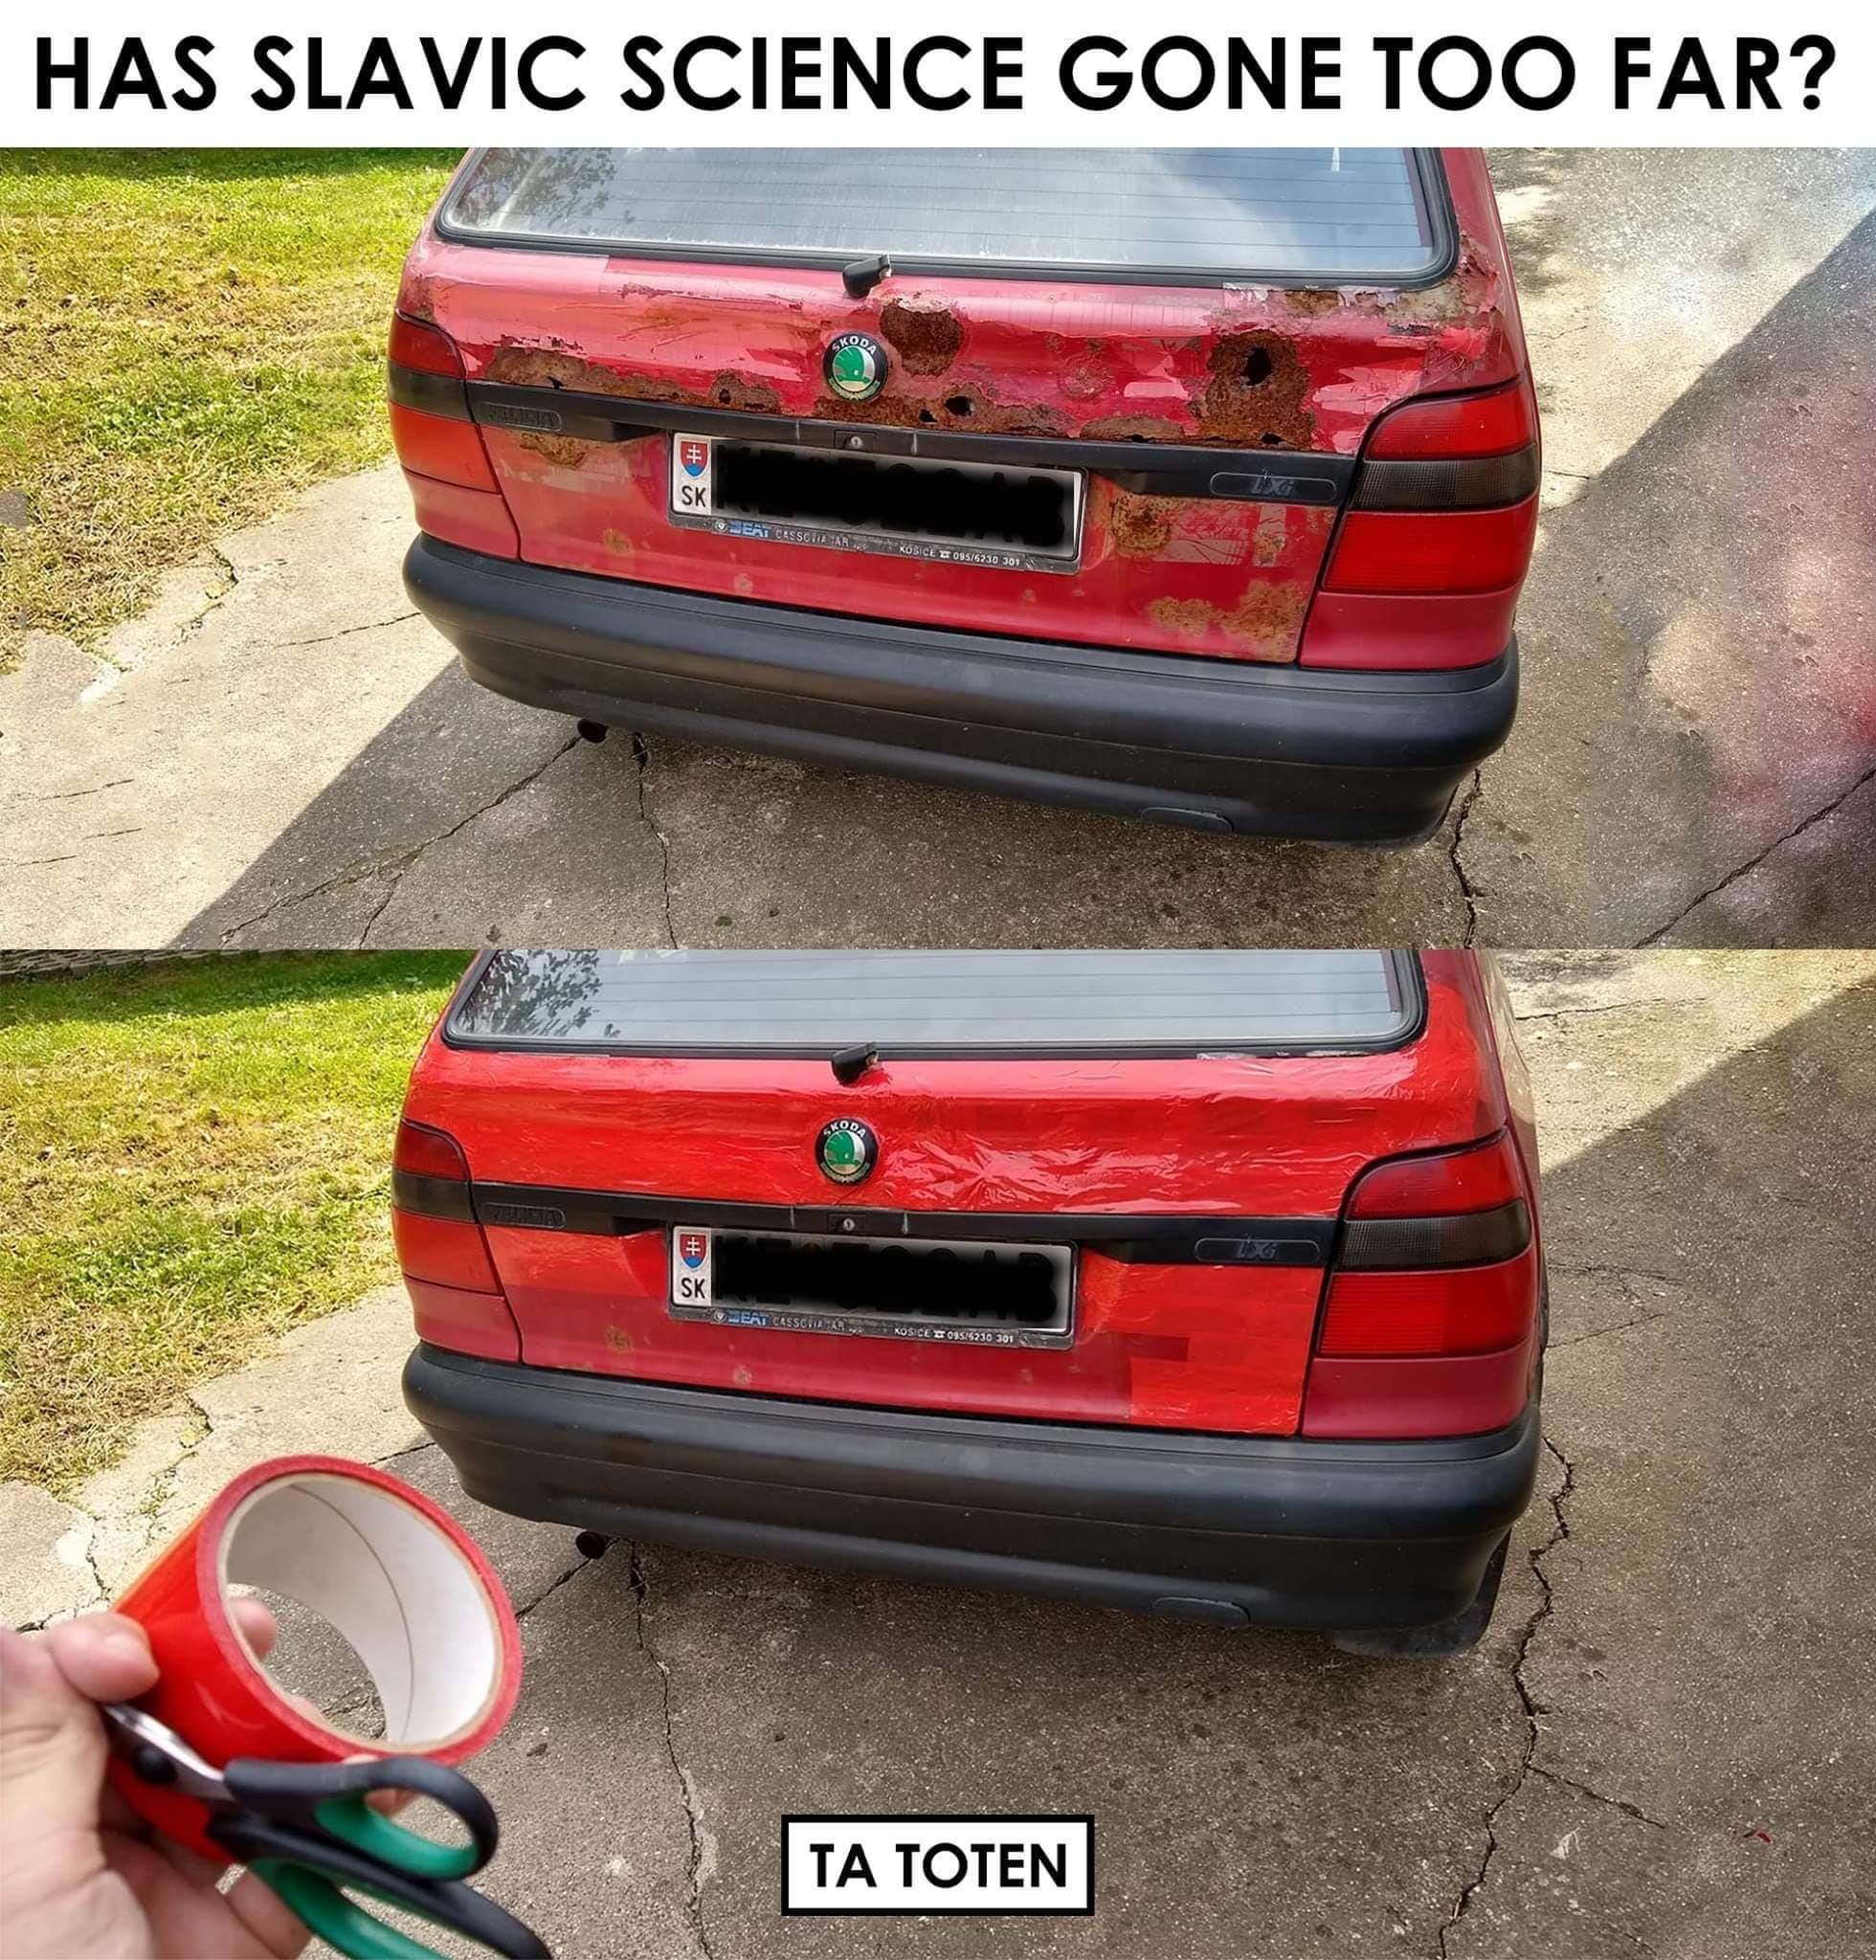 slavic meme - Slavs - Has Slavic Science Gone Too Far? Ta Toten